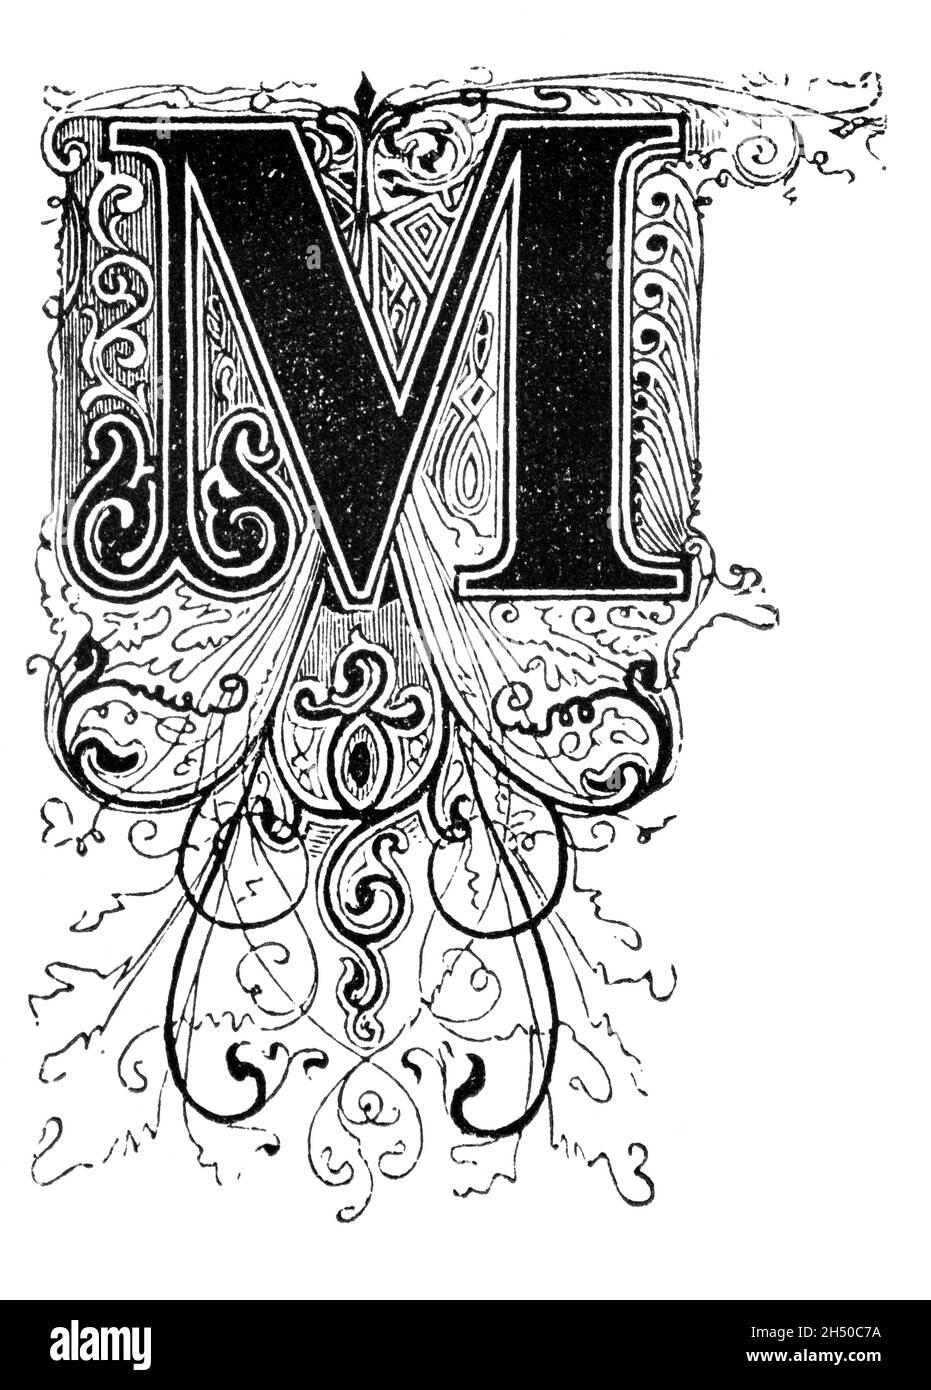 Großer dekorativer verzierter Buchstabe M, mit Blumenverzierung oder Ornament. Antike Vintage-Zeichnung Stockfoto